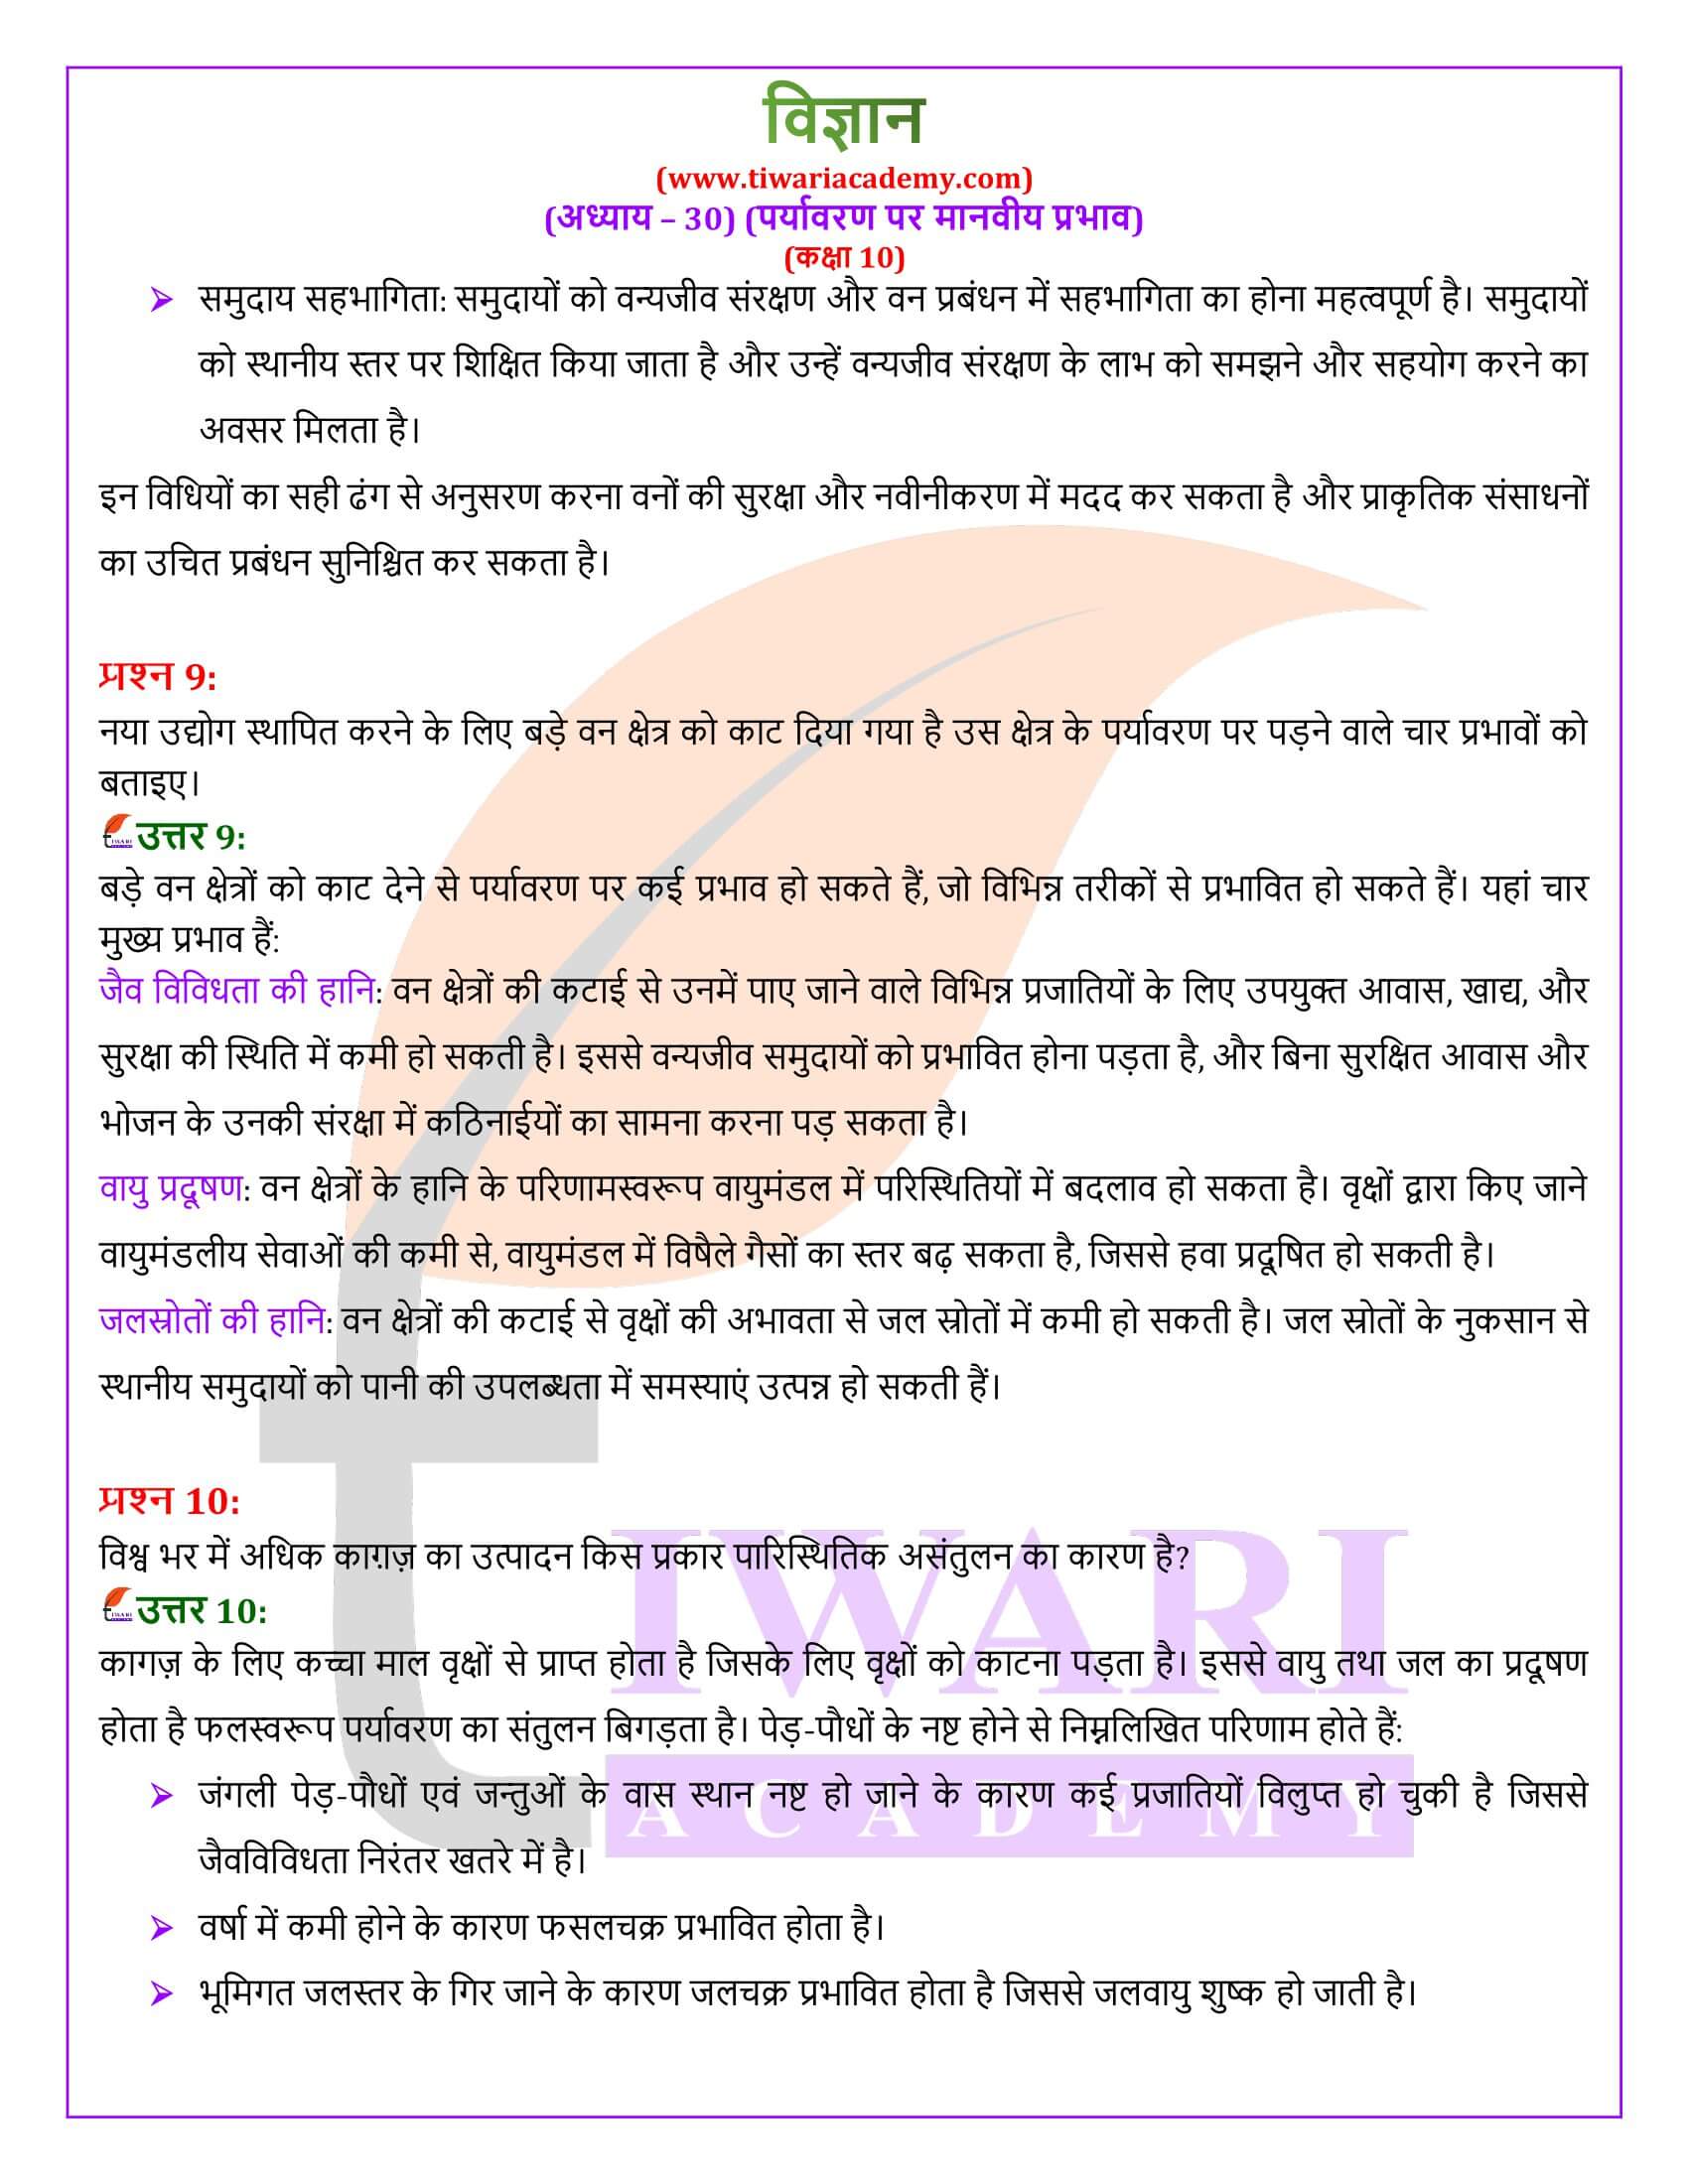 NIOS के लिए कक्षा 10 विज्ञान अध्याय 30 के हल हिंदी में